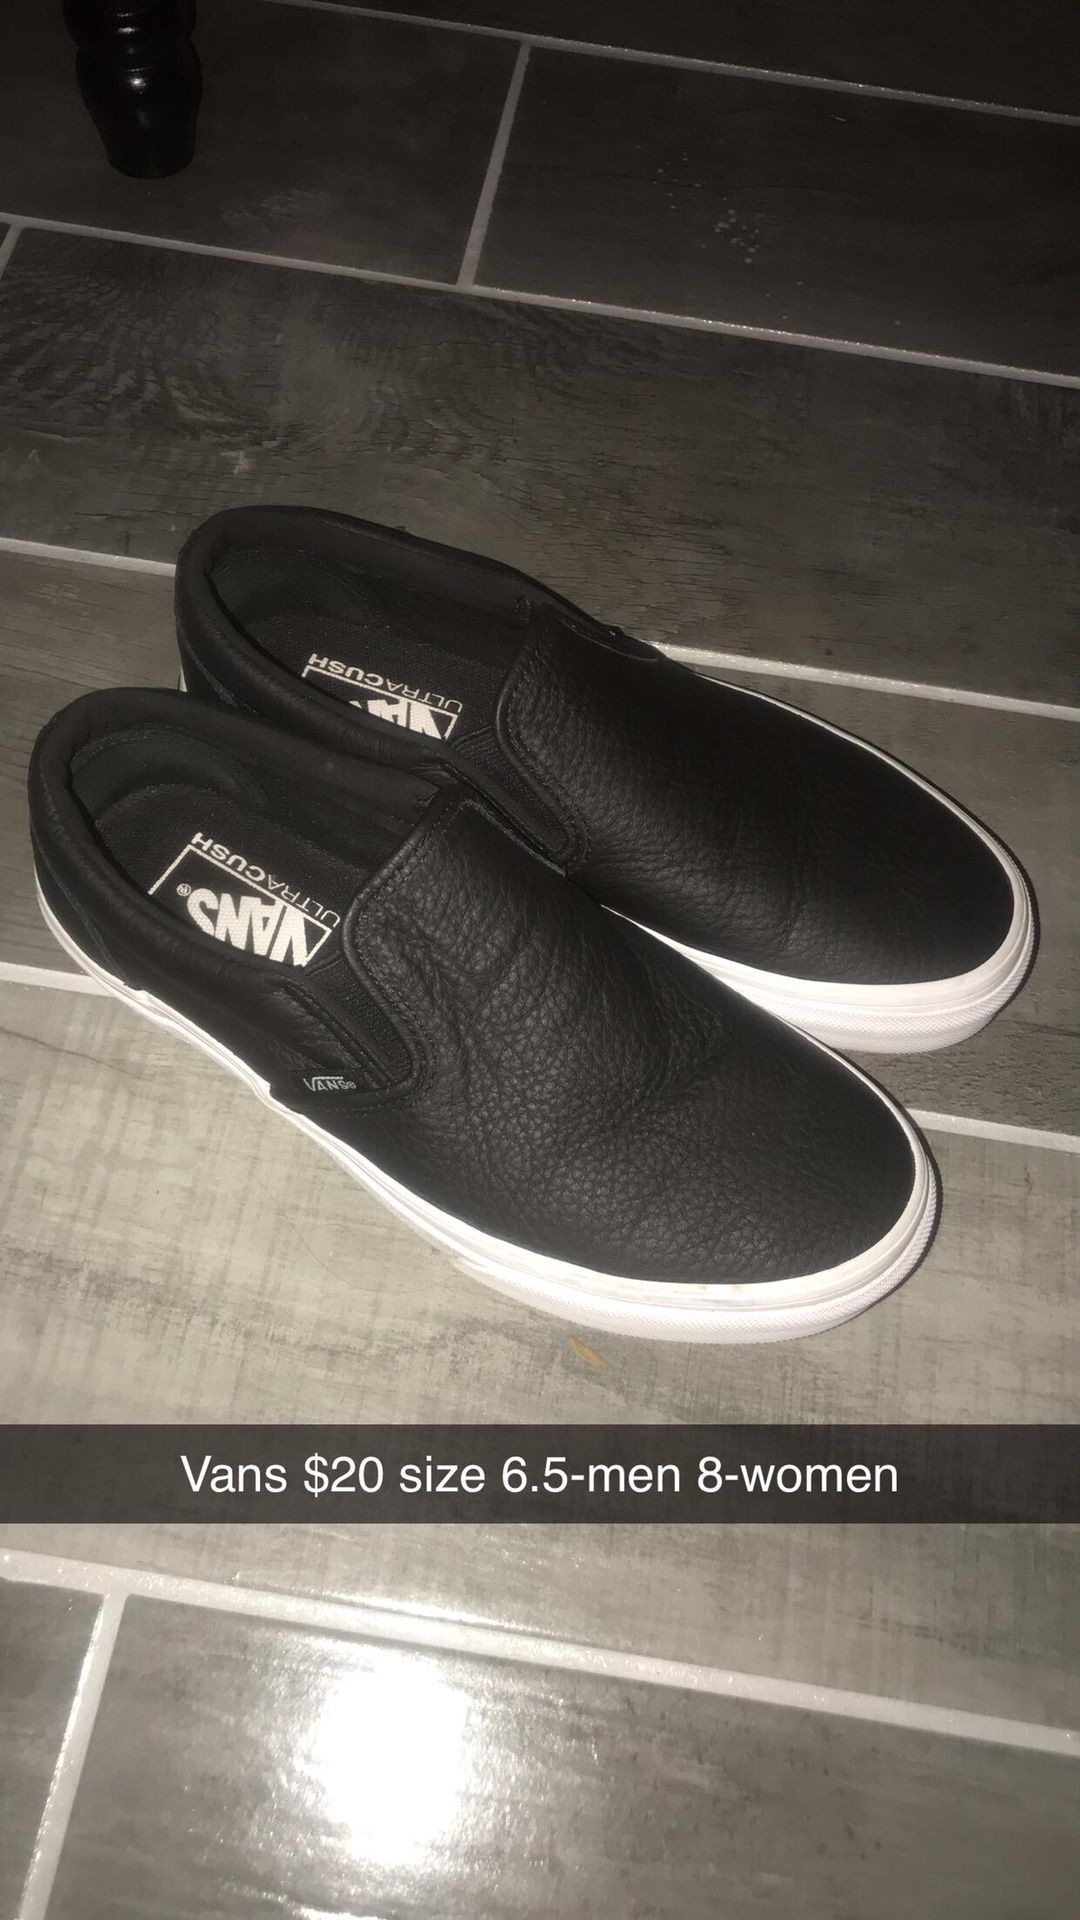 Vans Shoes $20